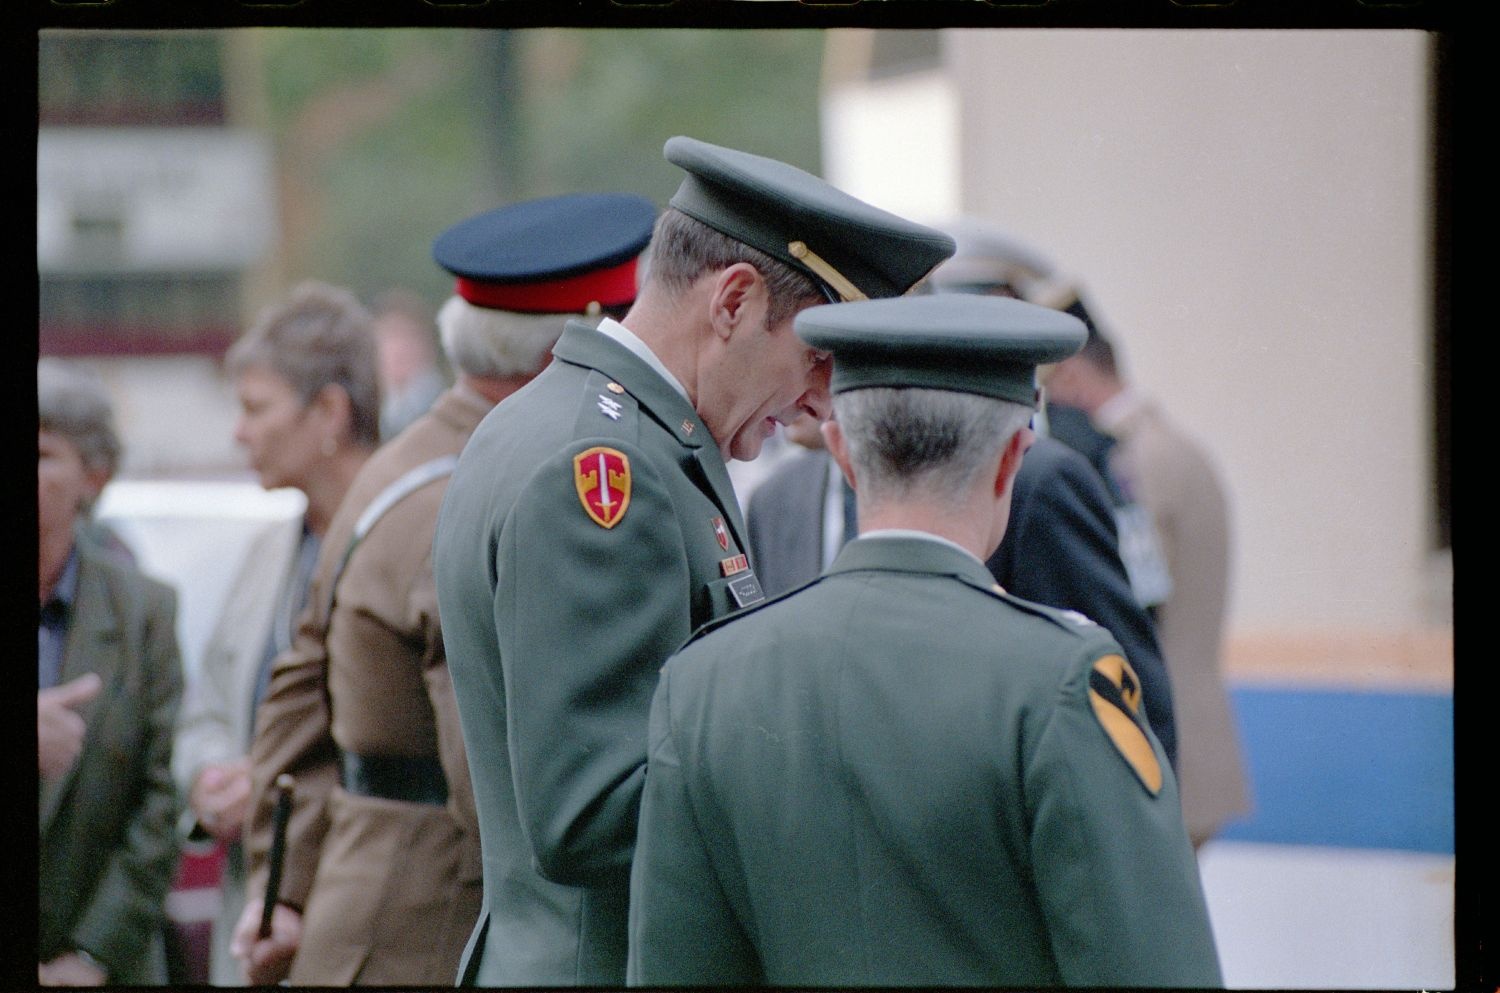 Fotografie: Feierliche Übergabe des Alliierten Kontrollhäuschens vom Checkpoint Charlie an das Deutsche Historische Museum in Berlin (AlliiertenMuseum/U.S. Army Photograph Public Domain Mark)